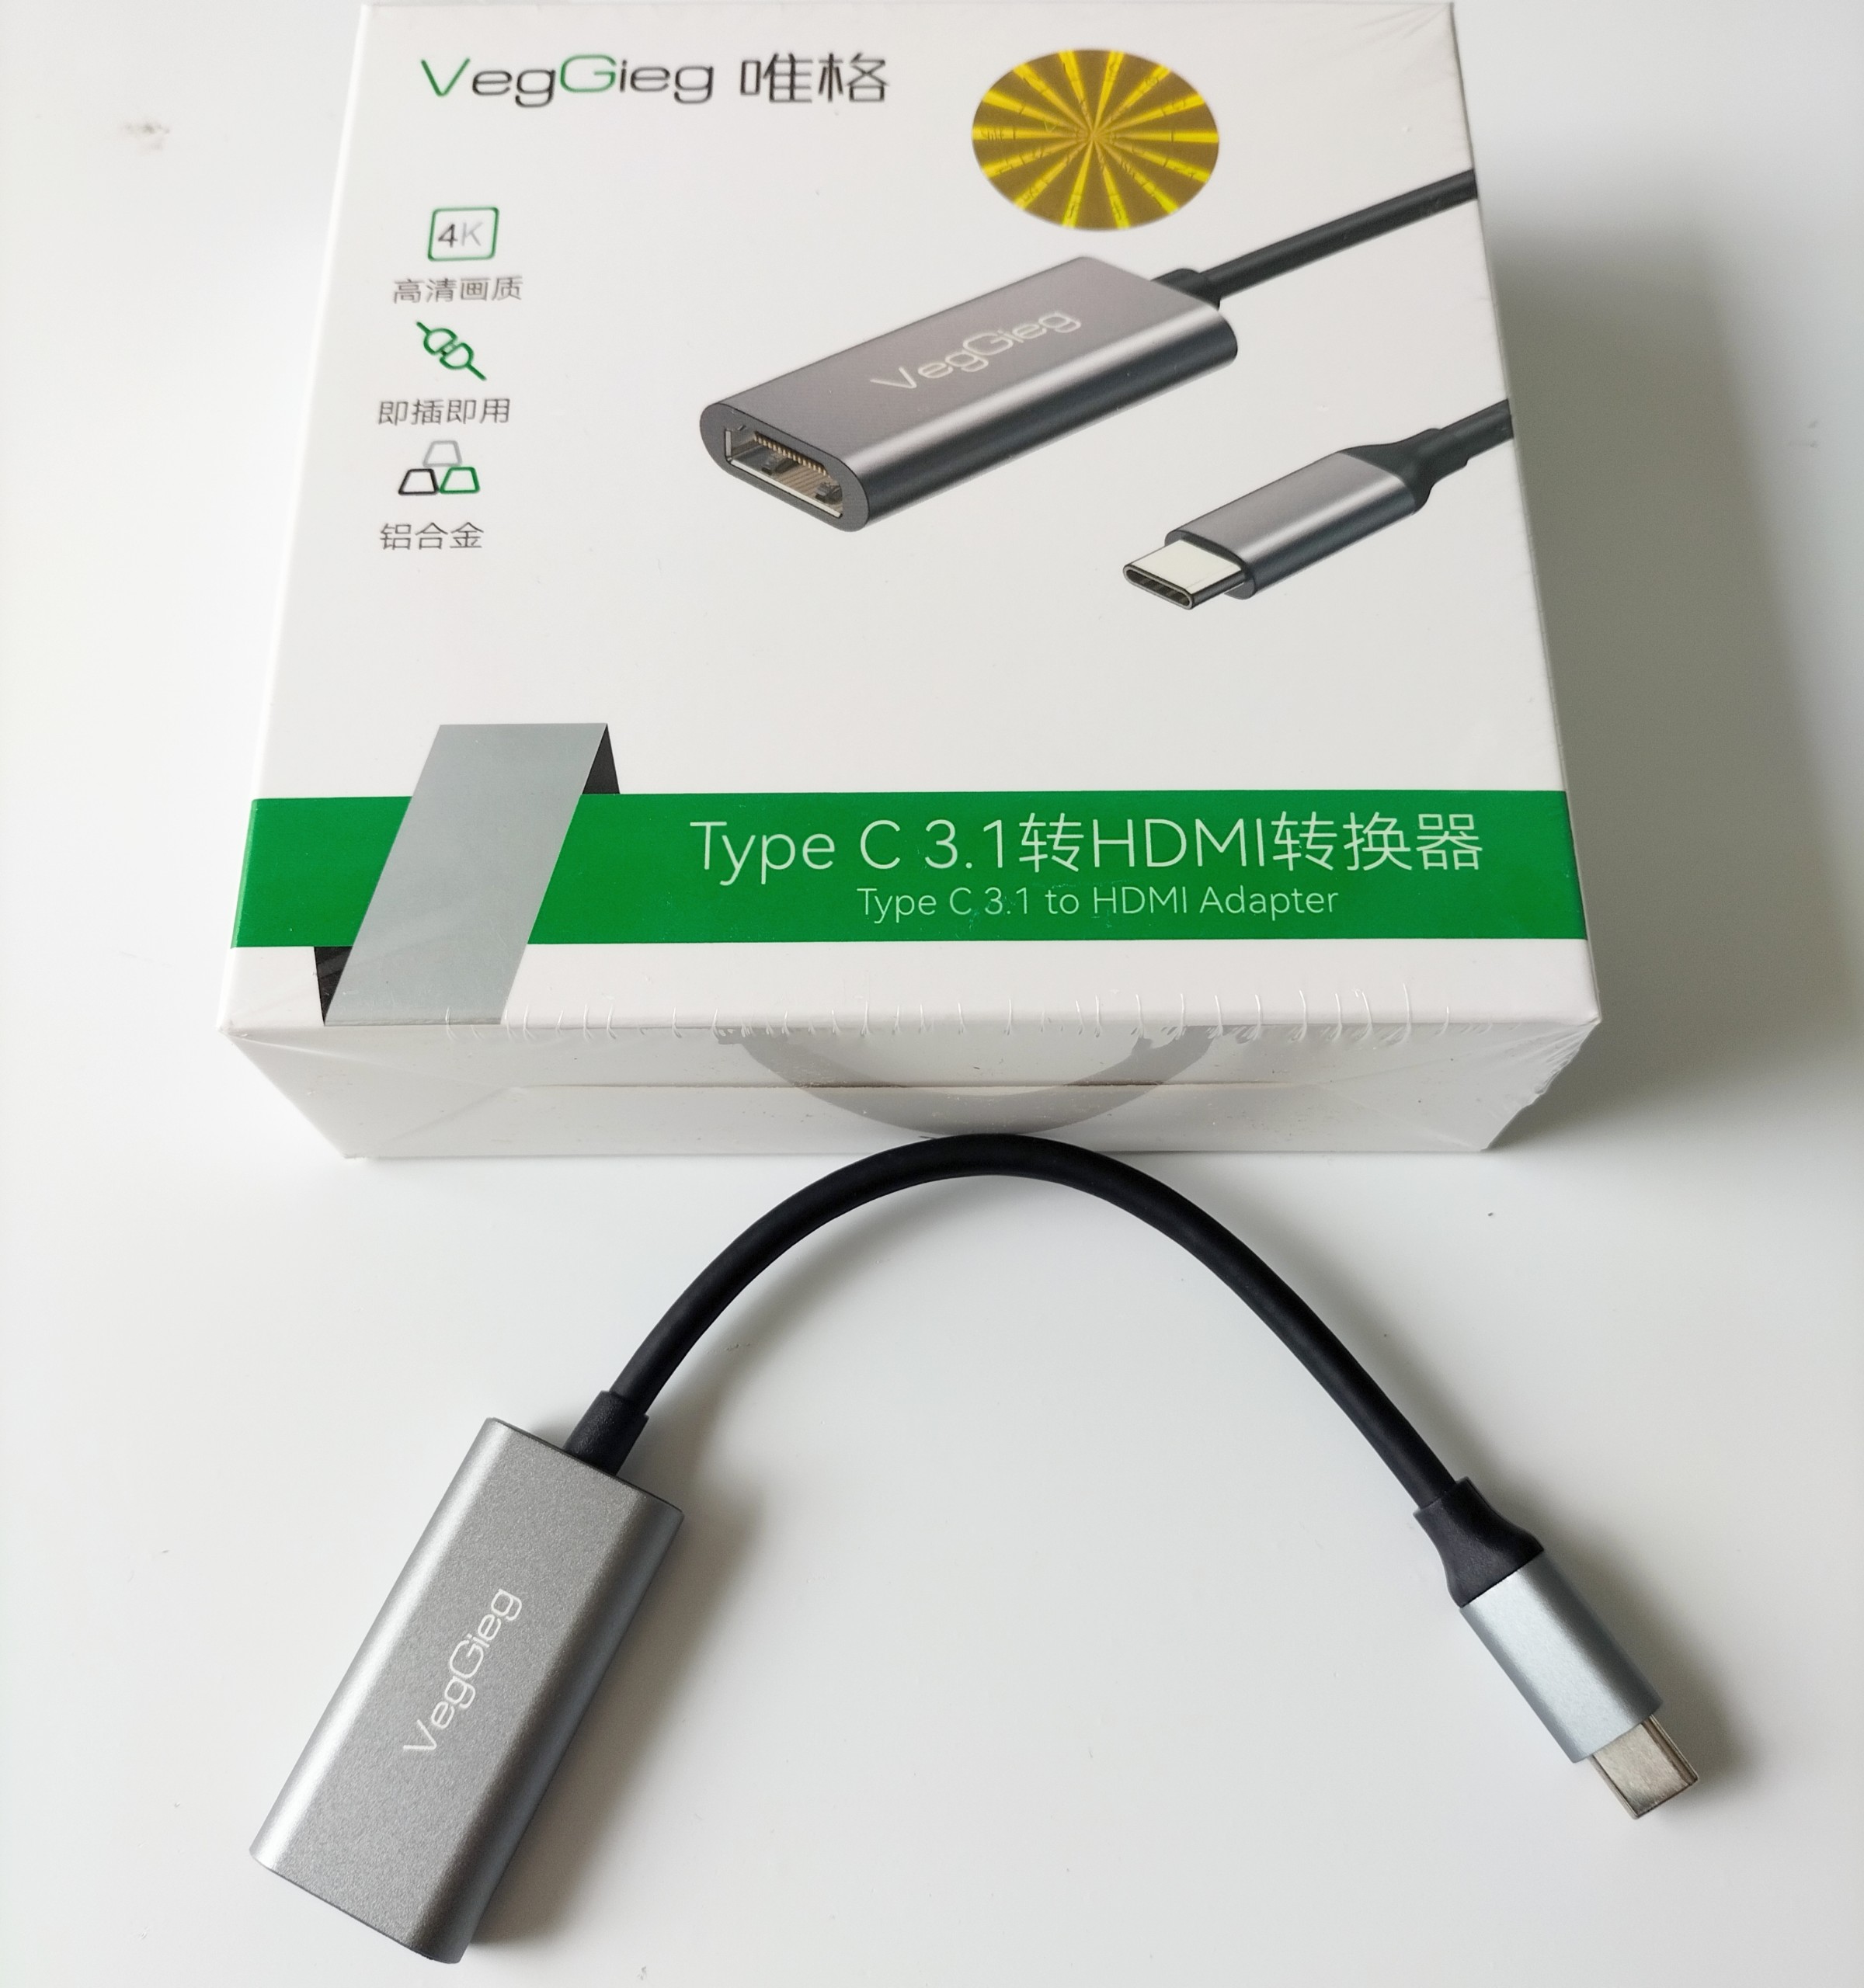 Type C 3.1 to HDMI HUB VZ915 VEGGIEG chính hãng